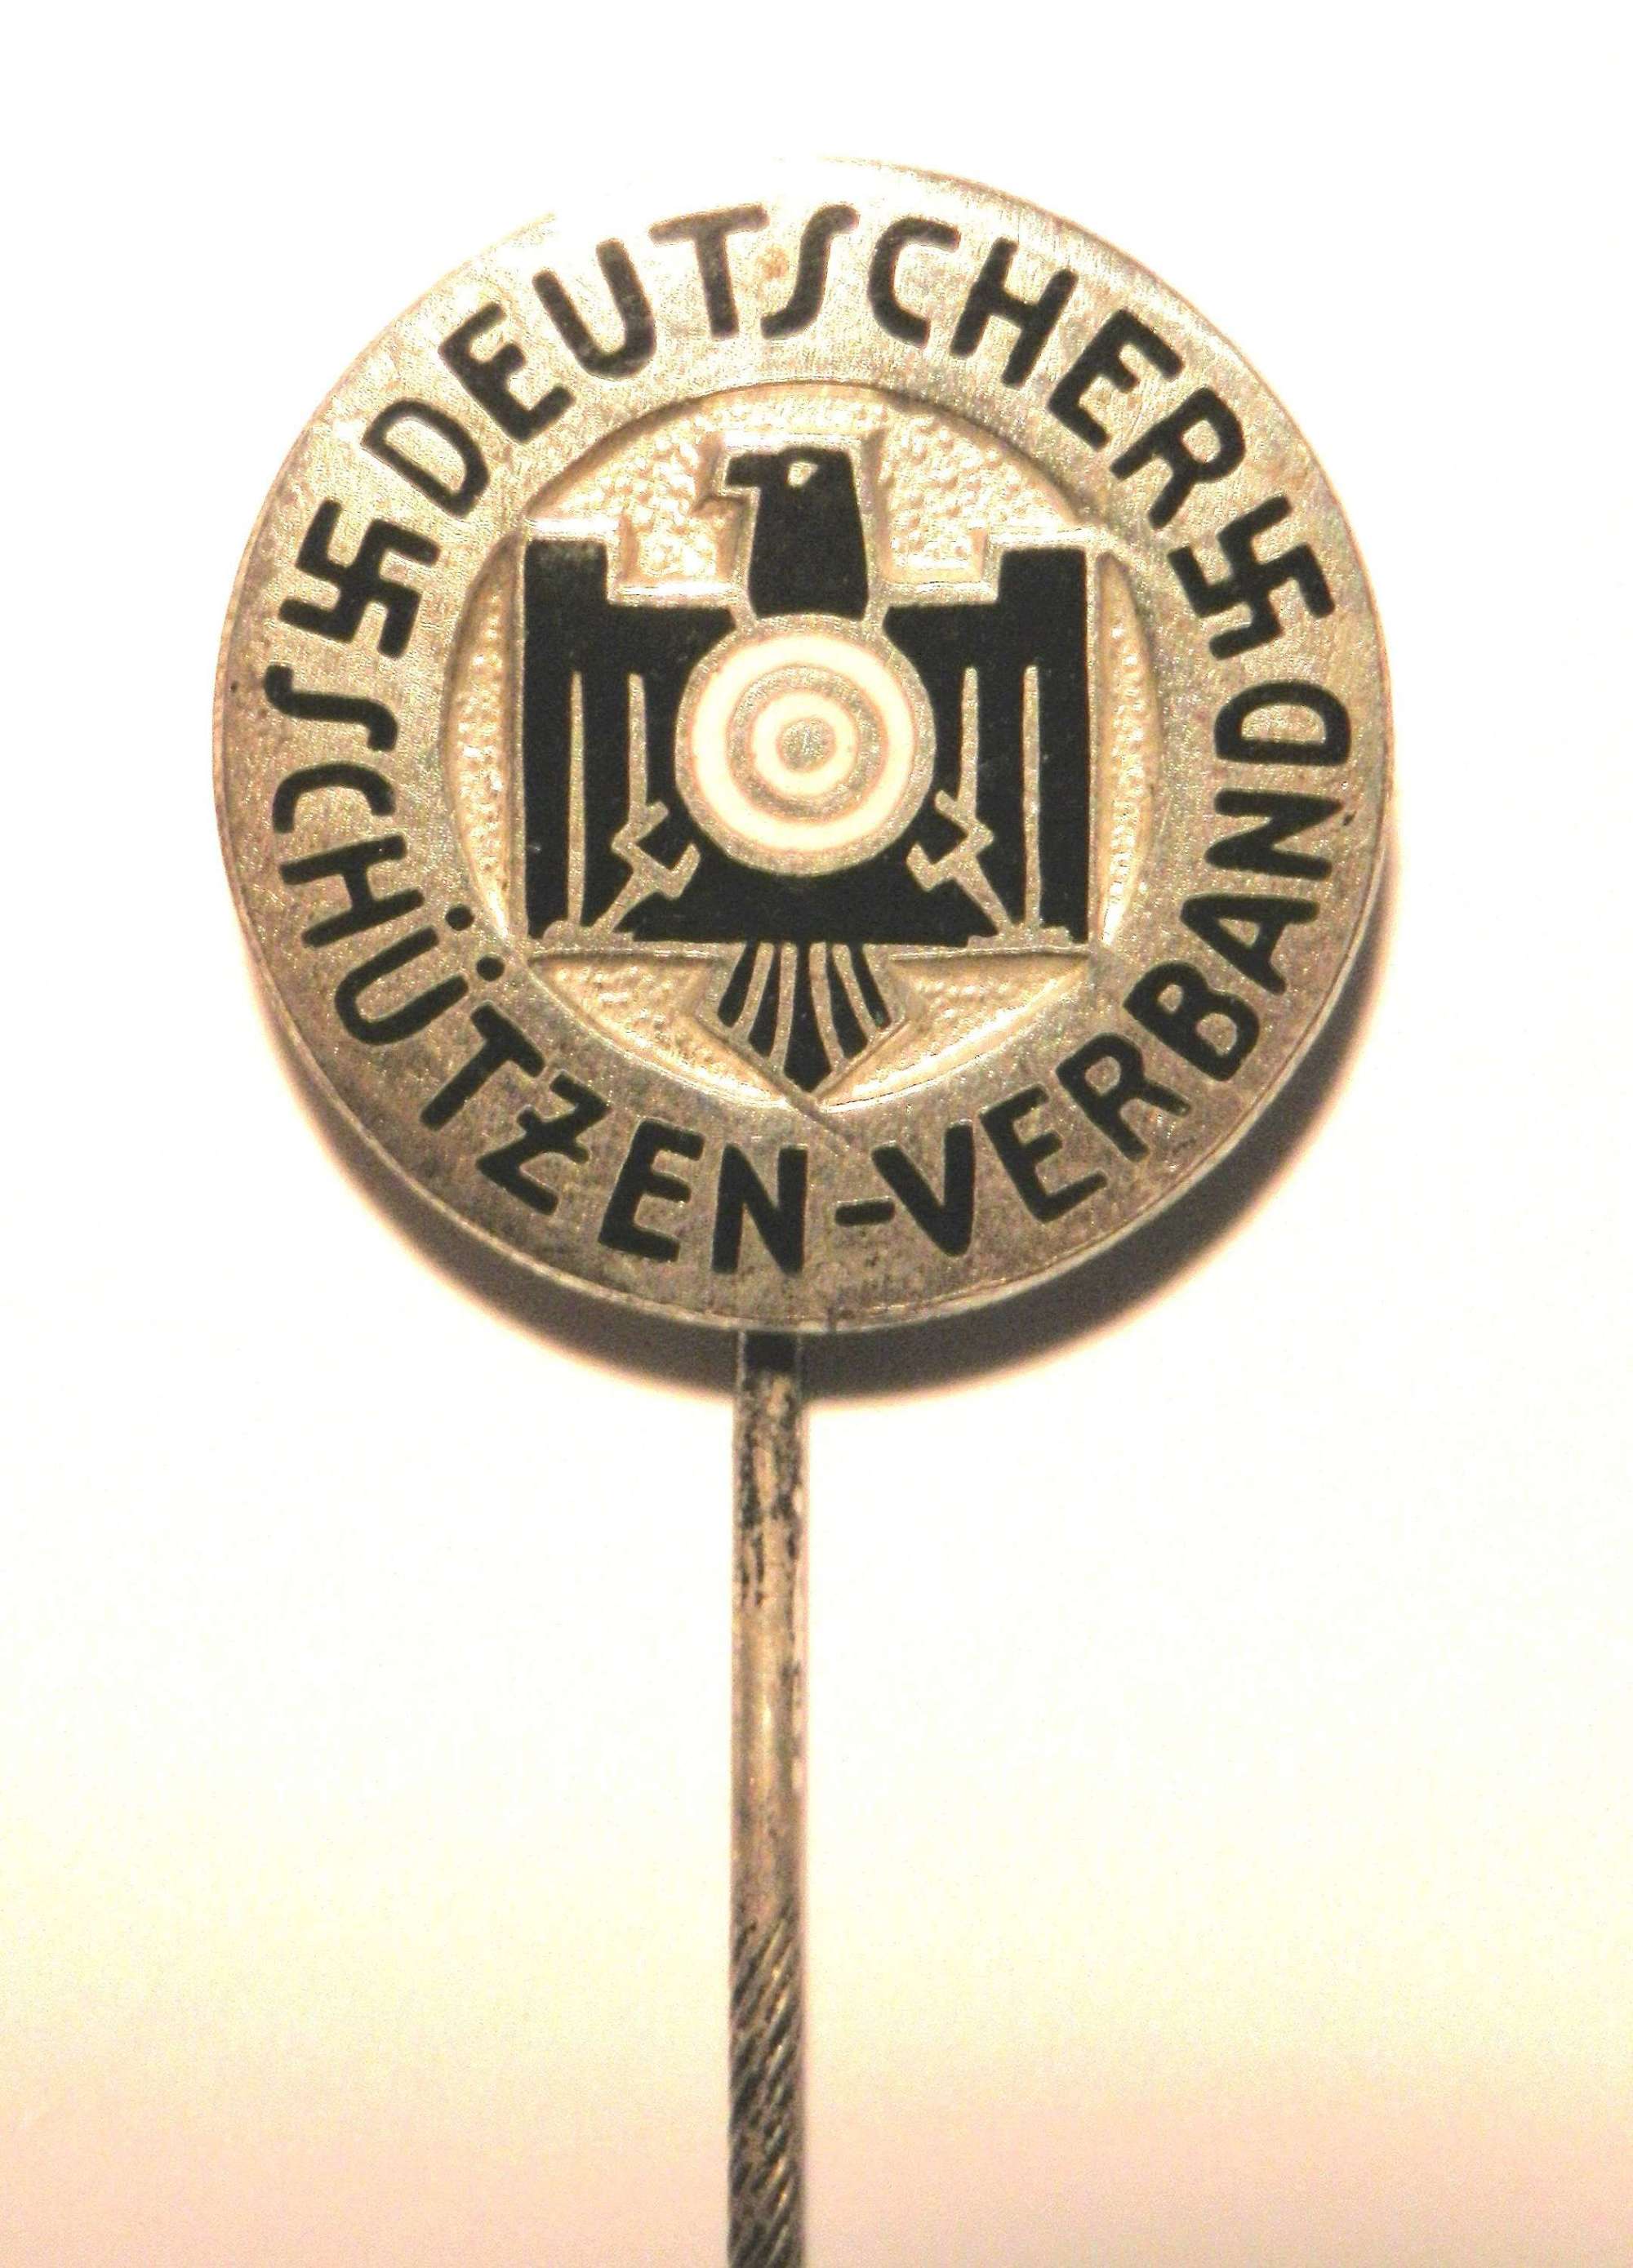 Deutscher Schutzen-Verband Members Pin.